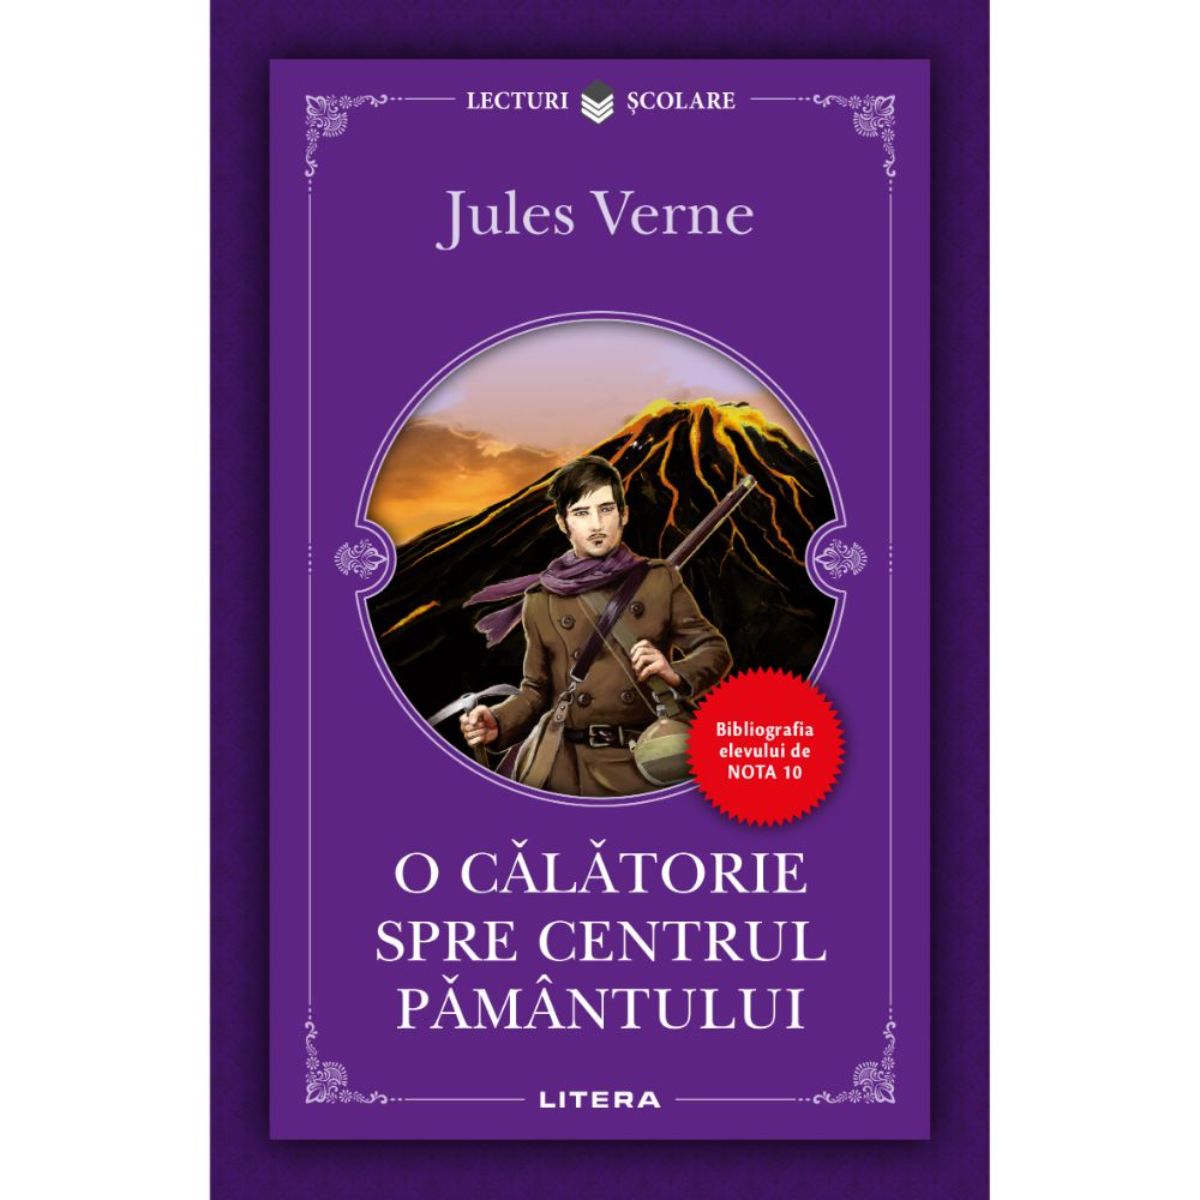 Poze O calatorie spre centrul pamantului, Jules Verne, Editie noua